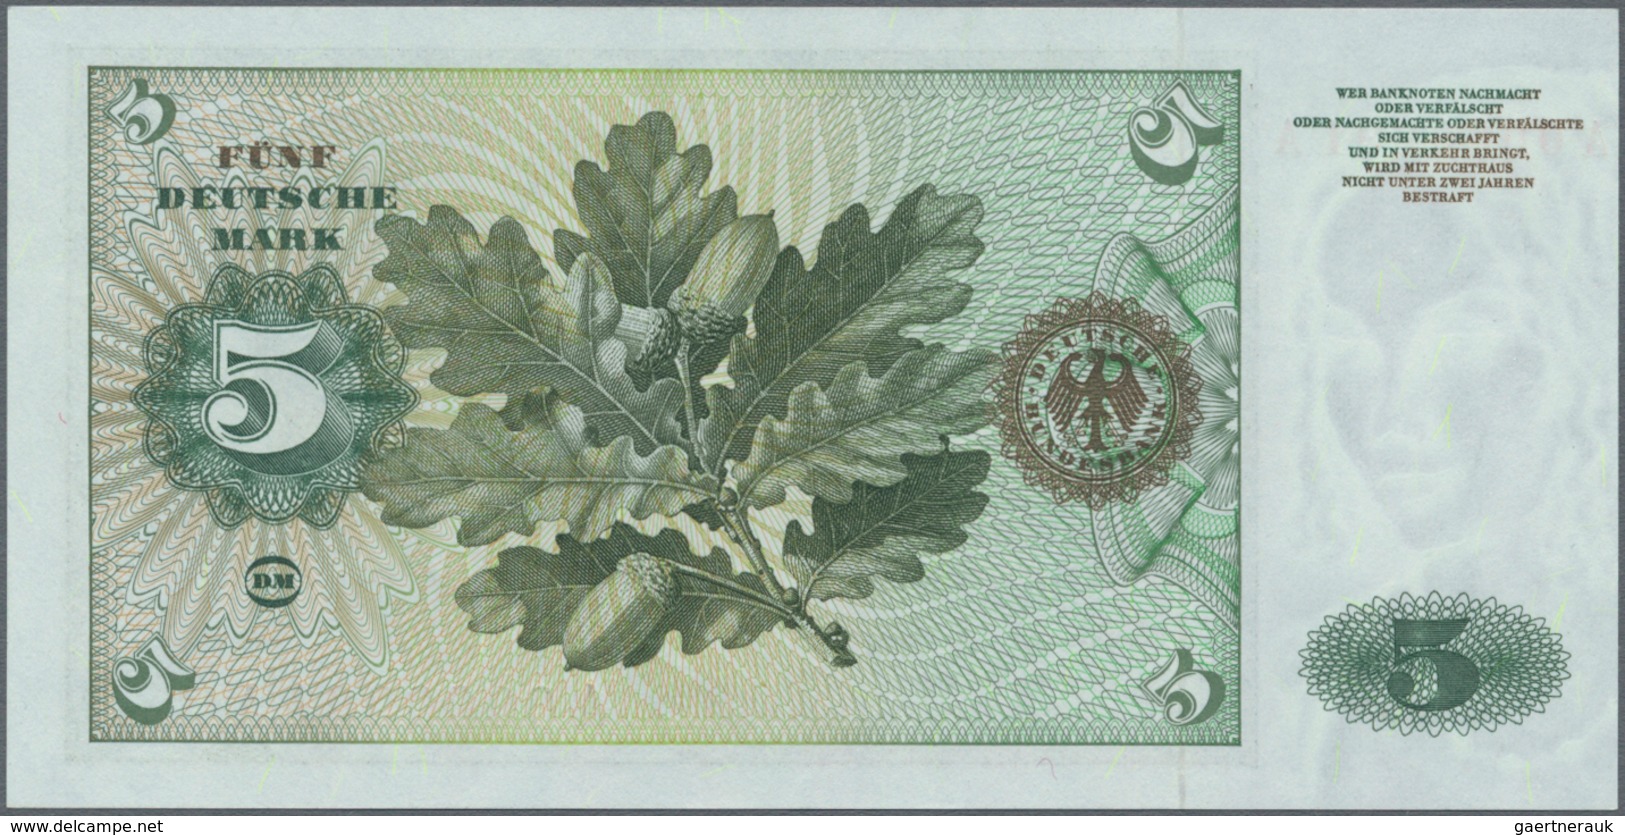 Deutschland - Bank Deutscher Länder + Bundesrepublik Deutschland: Sehr schönes Lot mit 4 Banknoten d